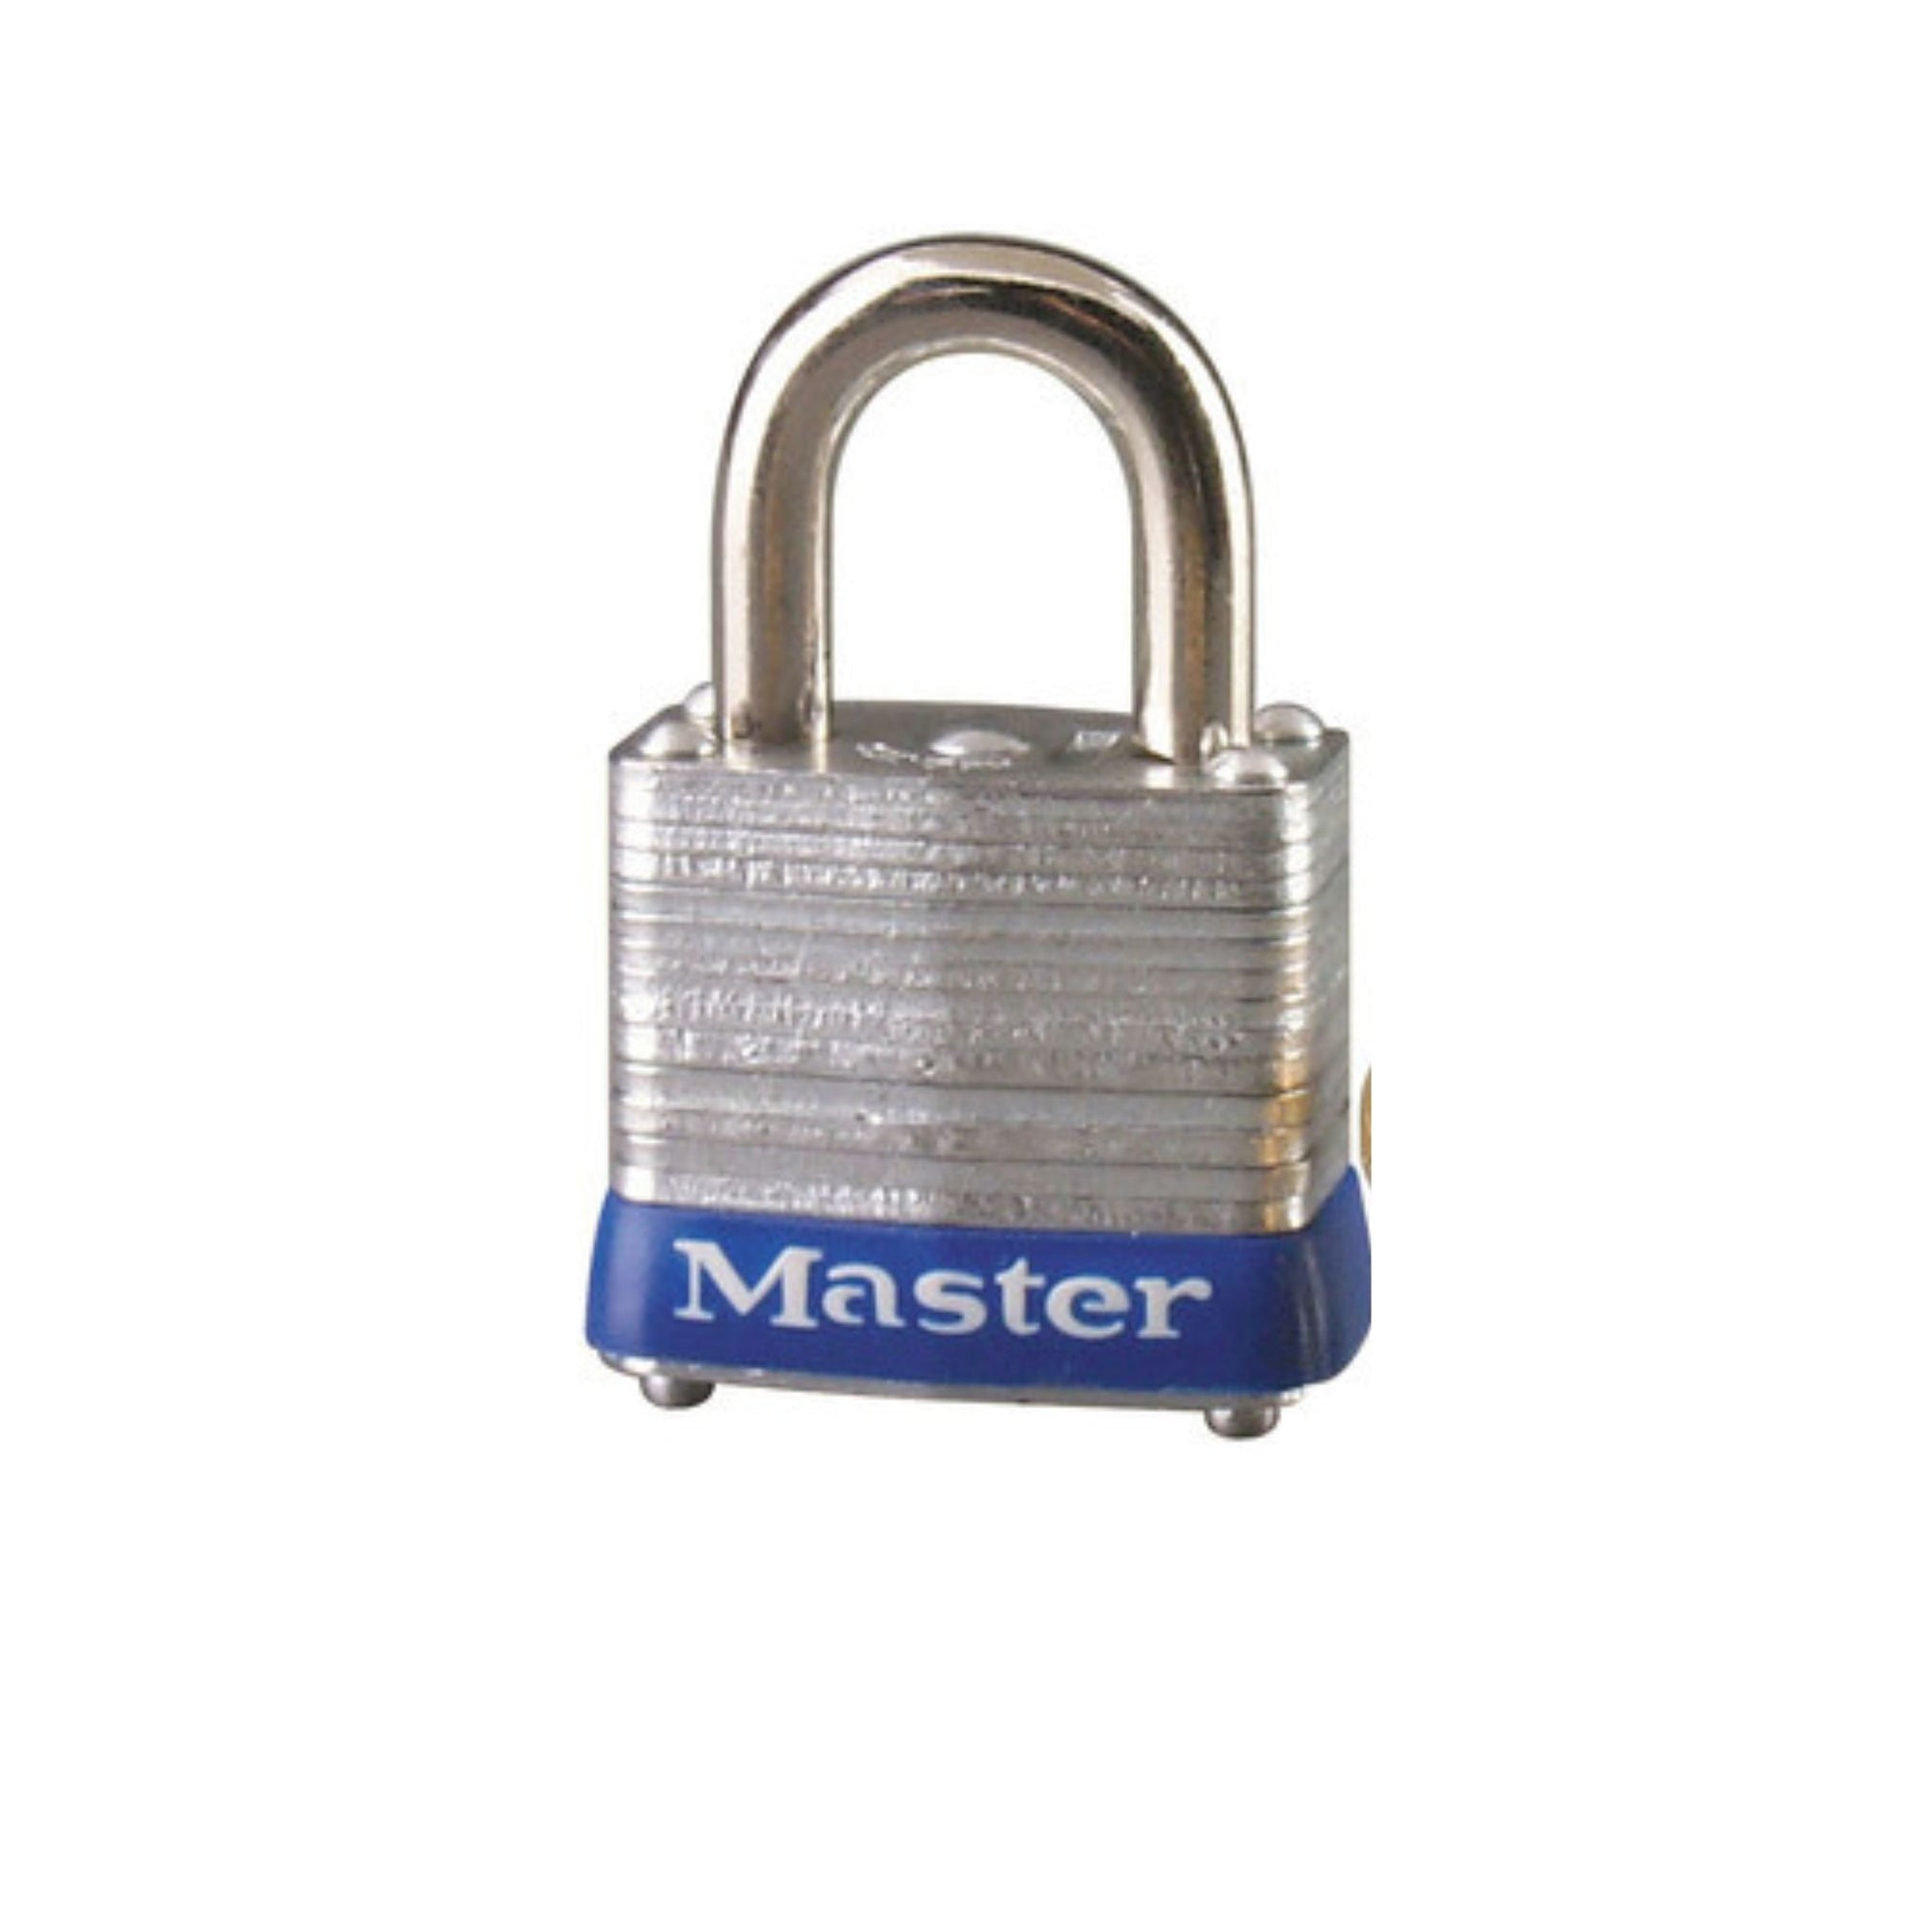 Master Lock 7KA P114 Lock Laminated steel No. 7 Series Padlock Keyed to Match Existing Key Number KAP114 - The Lock Source